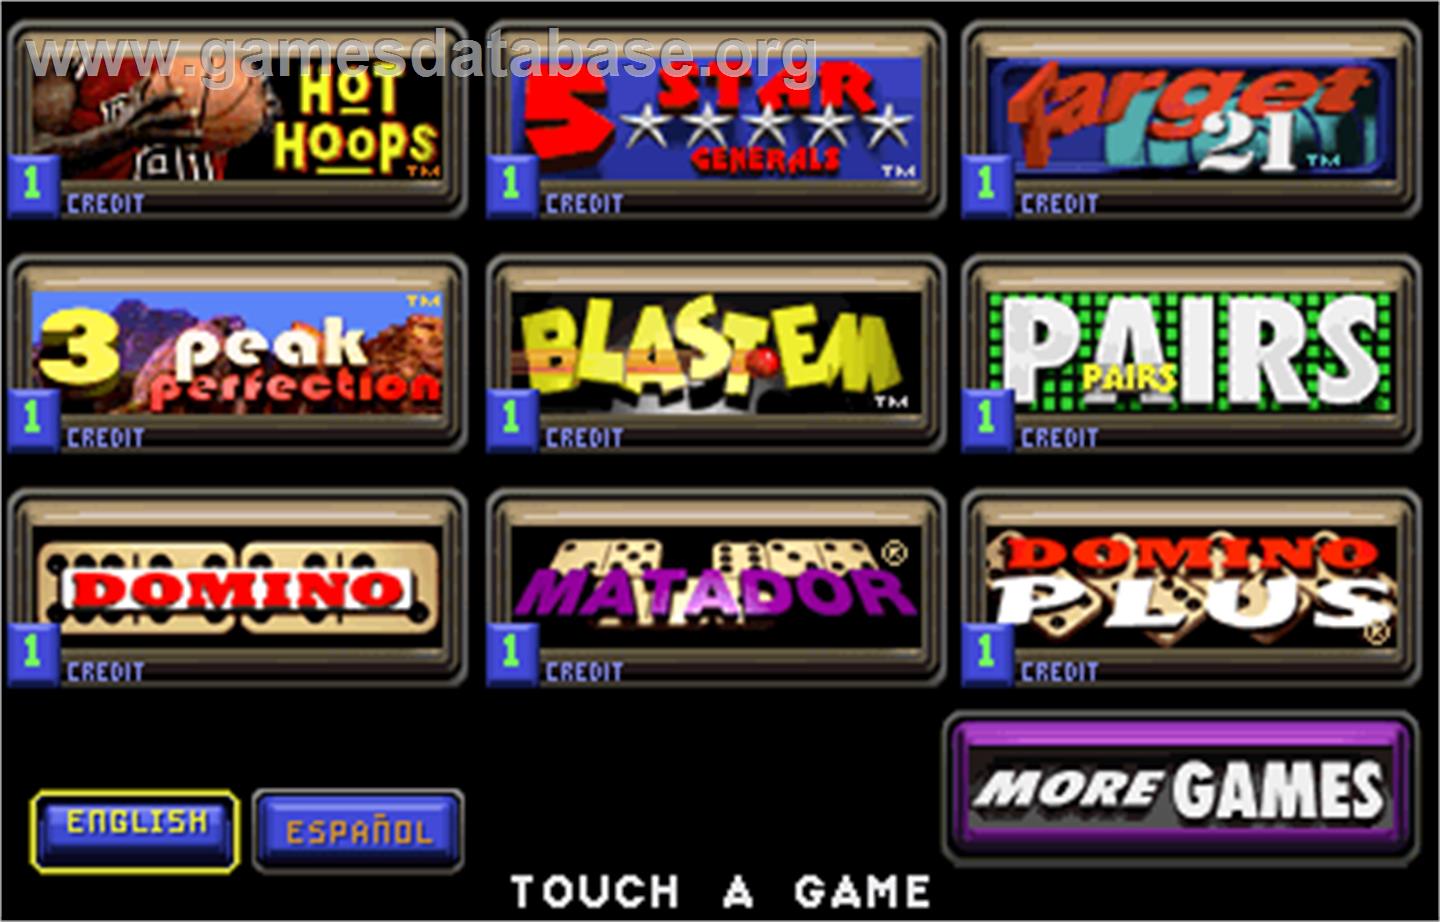 Touchmaster 2000 - Arcade - Artwork - Select Screen